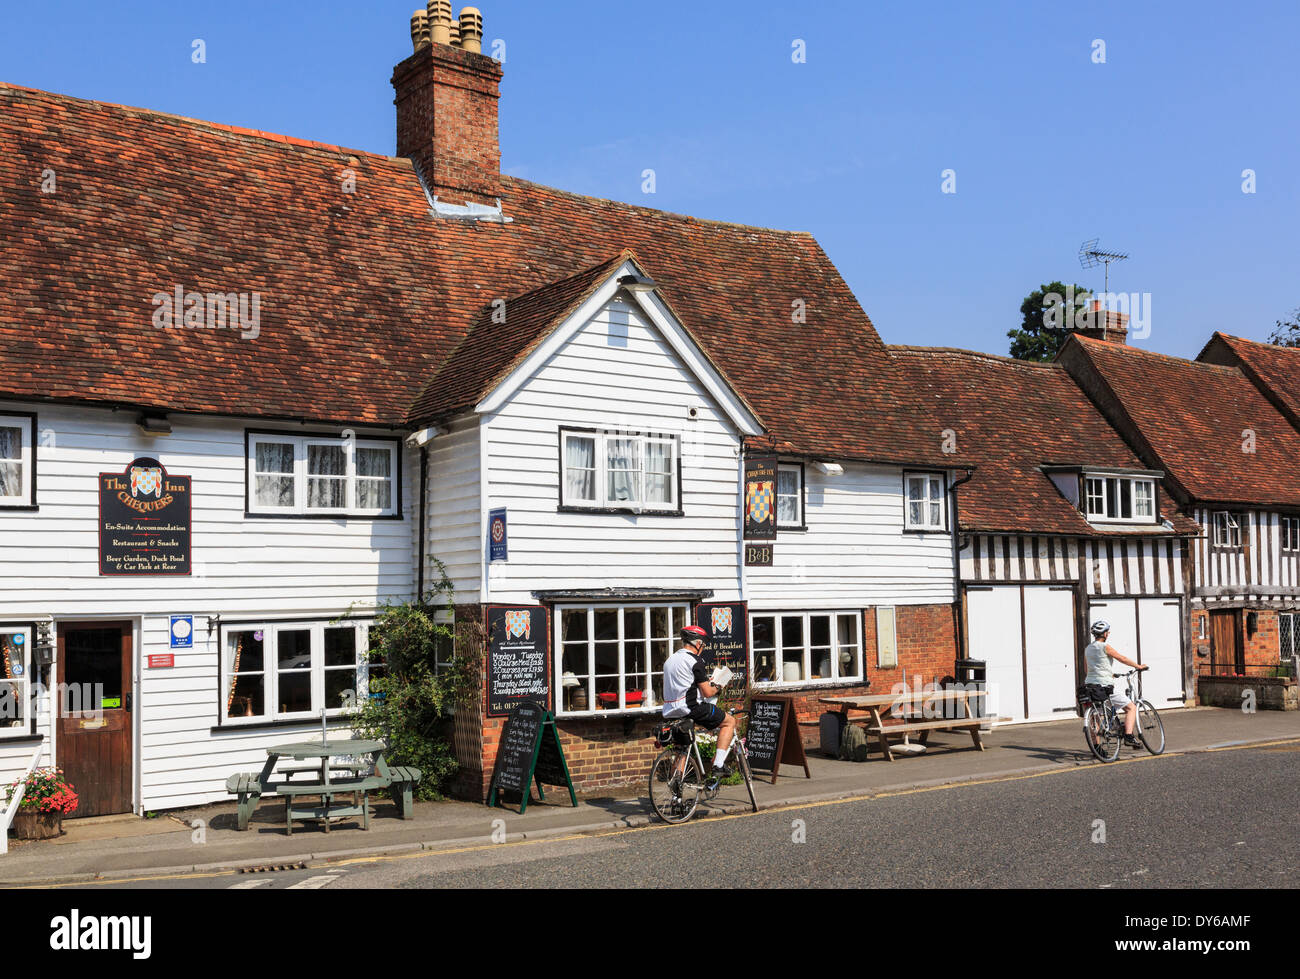 Radfahrer durch Das Chequers Inn 14 thc Village Pub in eine Weiße Schindeln Kentish alten Gebäude in Smarden Kent England Großbritannien Großbritannien ruhen Stockfoto